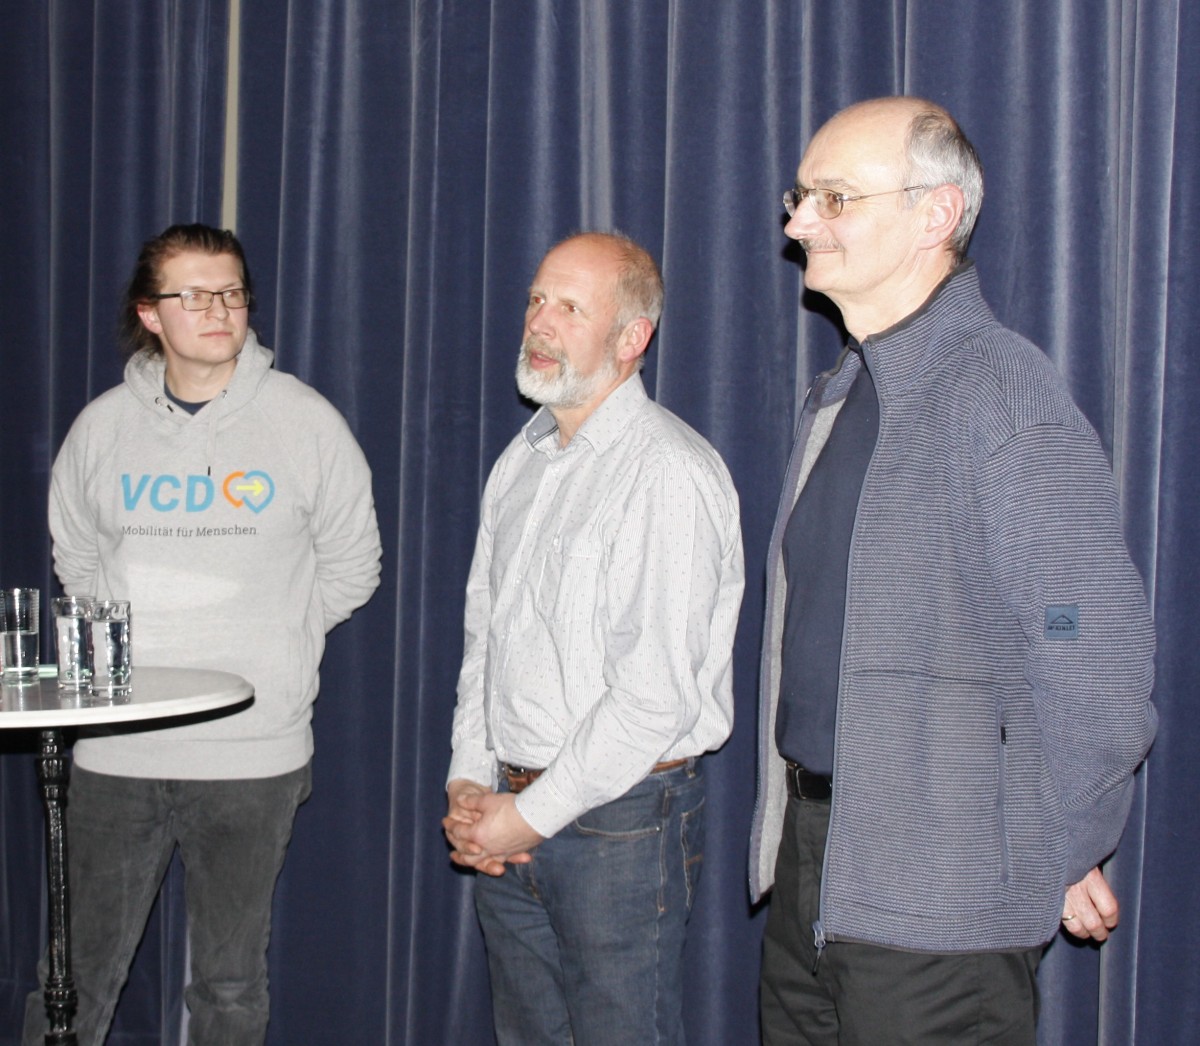 Das Bild zeigt Daniel Riebl, Norbert Brunner und Gerhard Gradl, die vor der Kinoleinwand stehen.